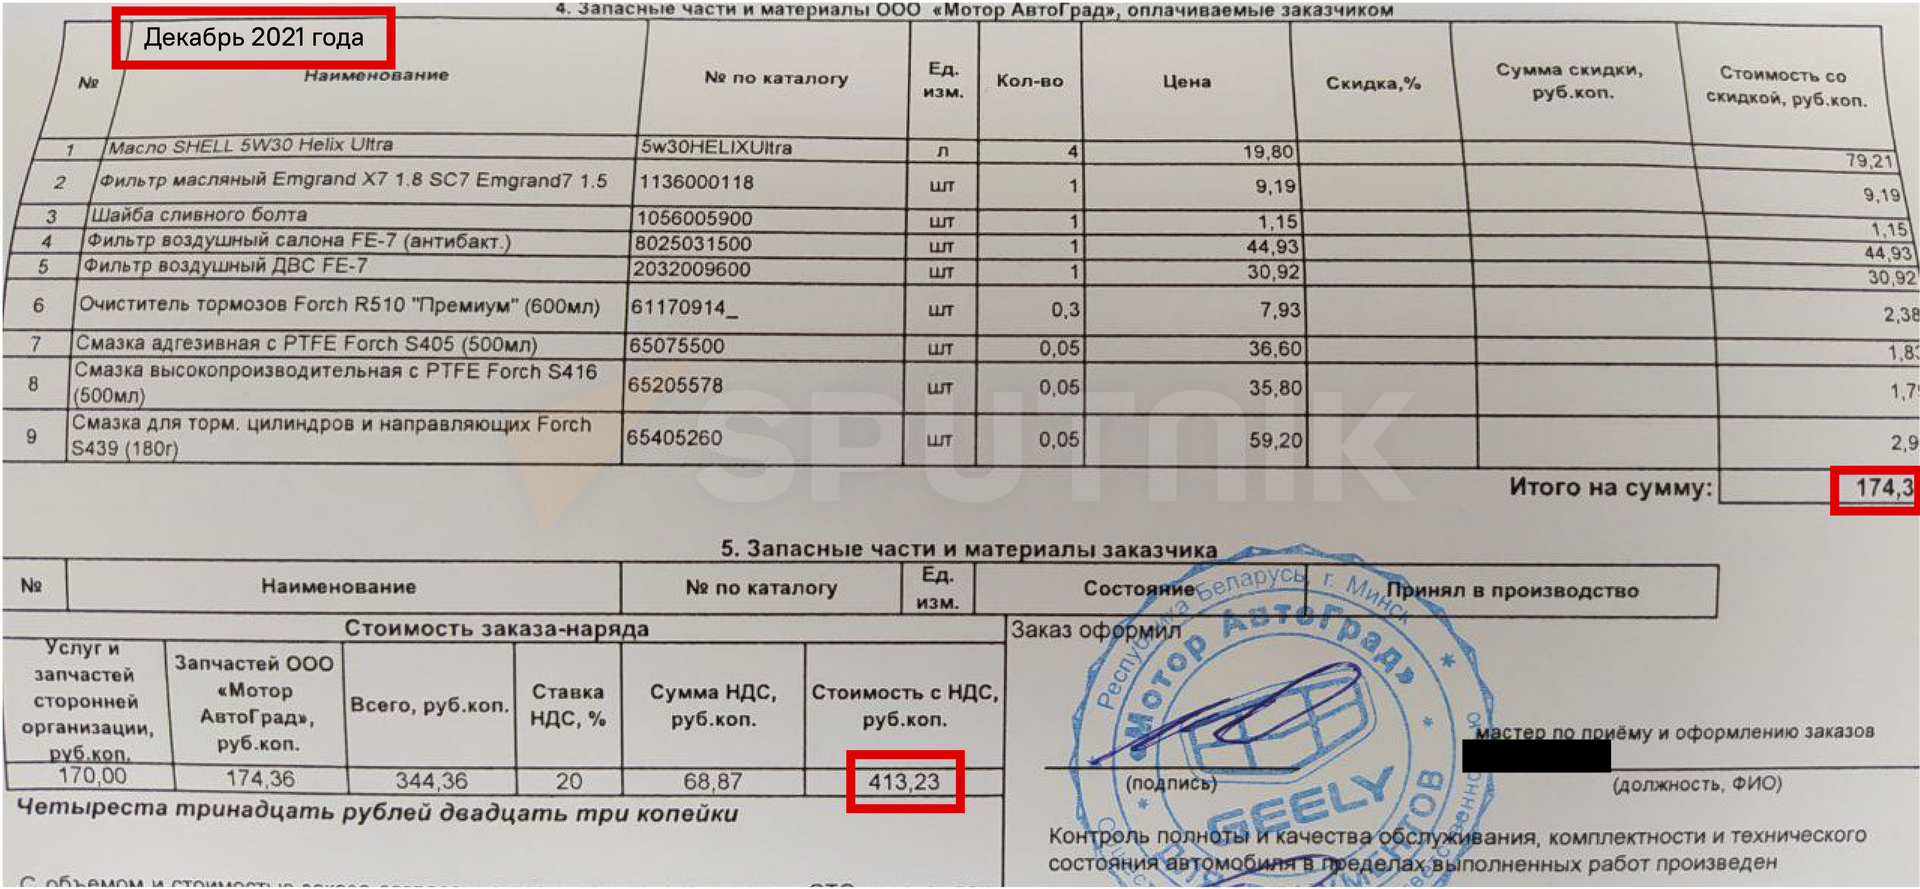 Стоимость обслуживания Geely GS в декабре 2021 года - Sputnik Беларусь, 1920, 11.08.2022